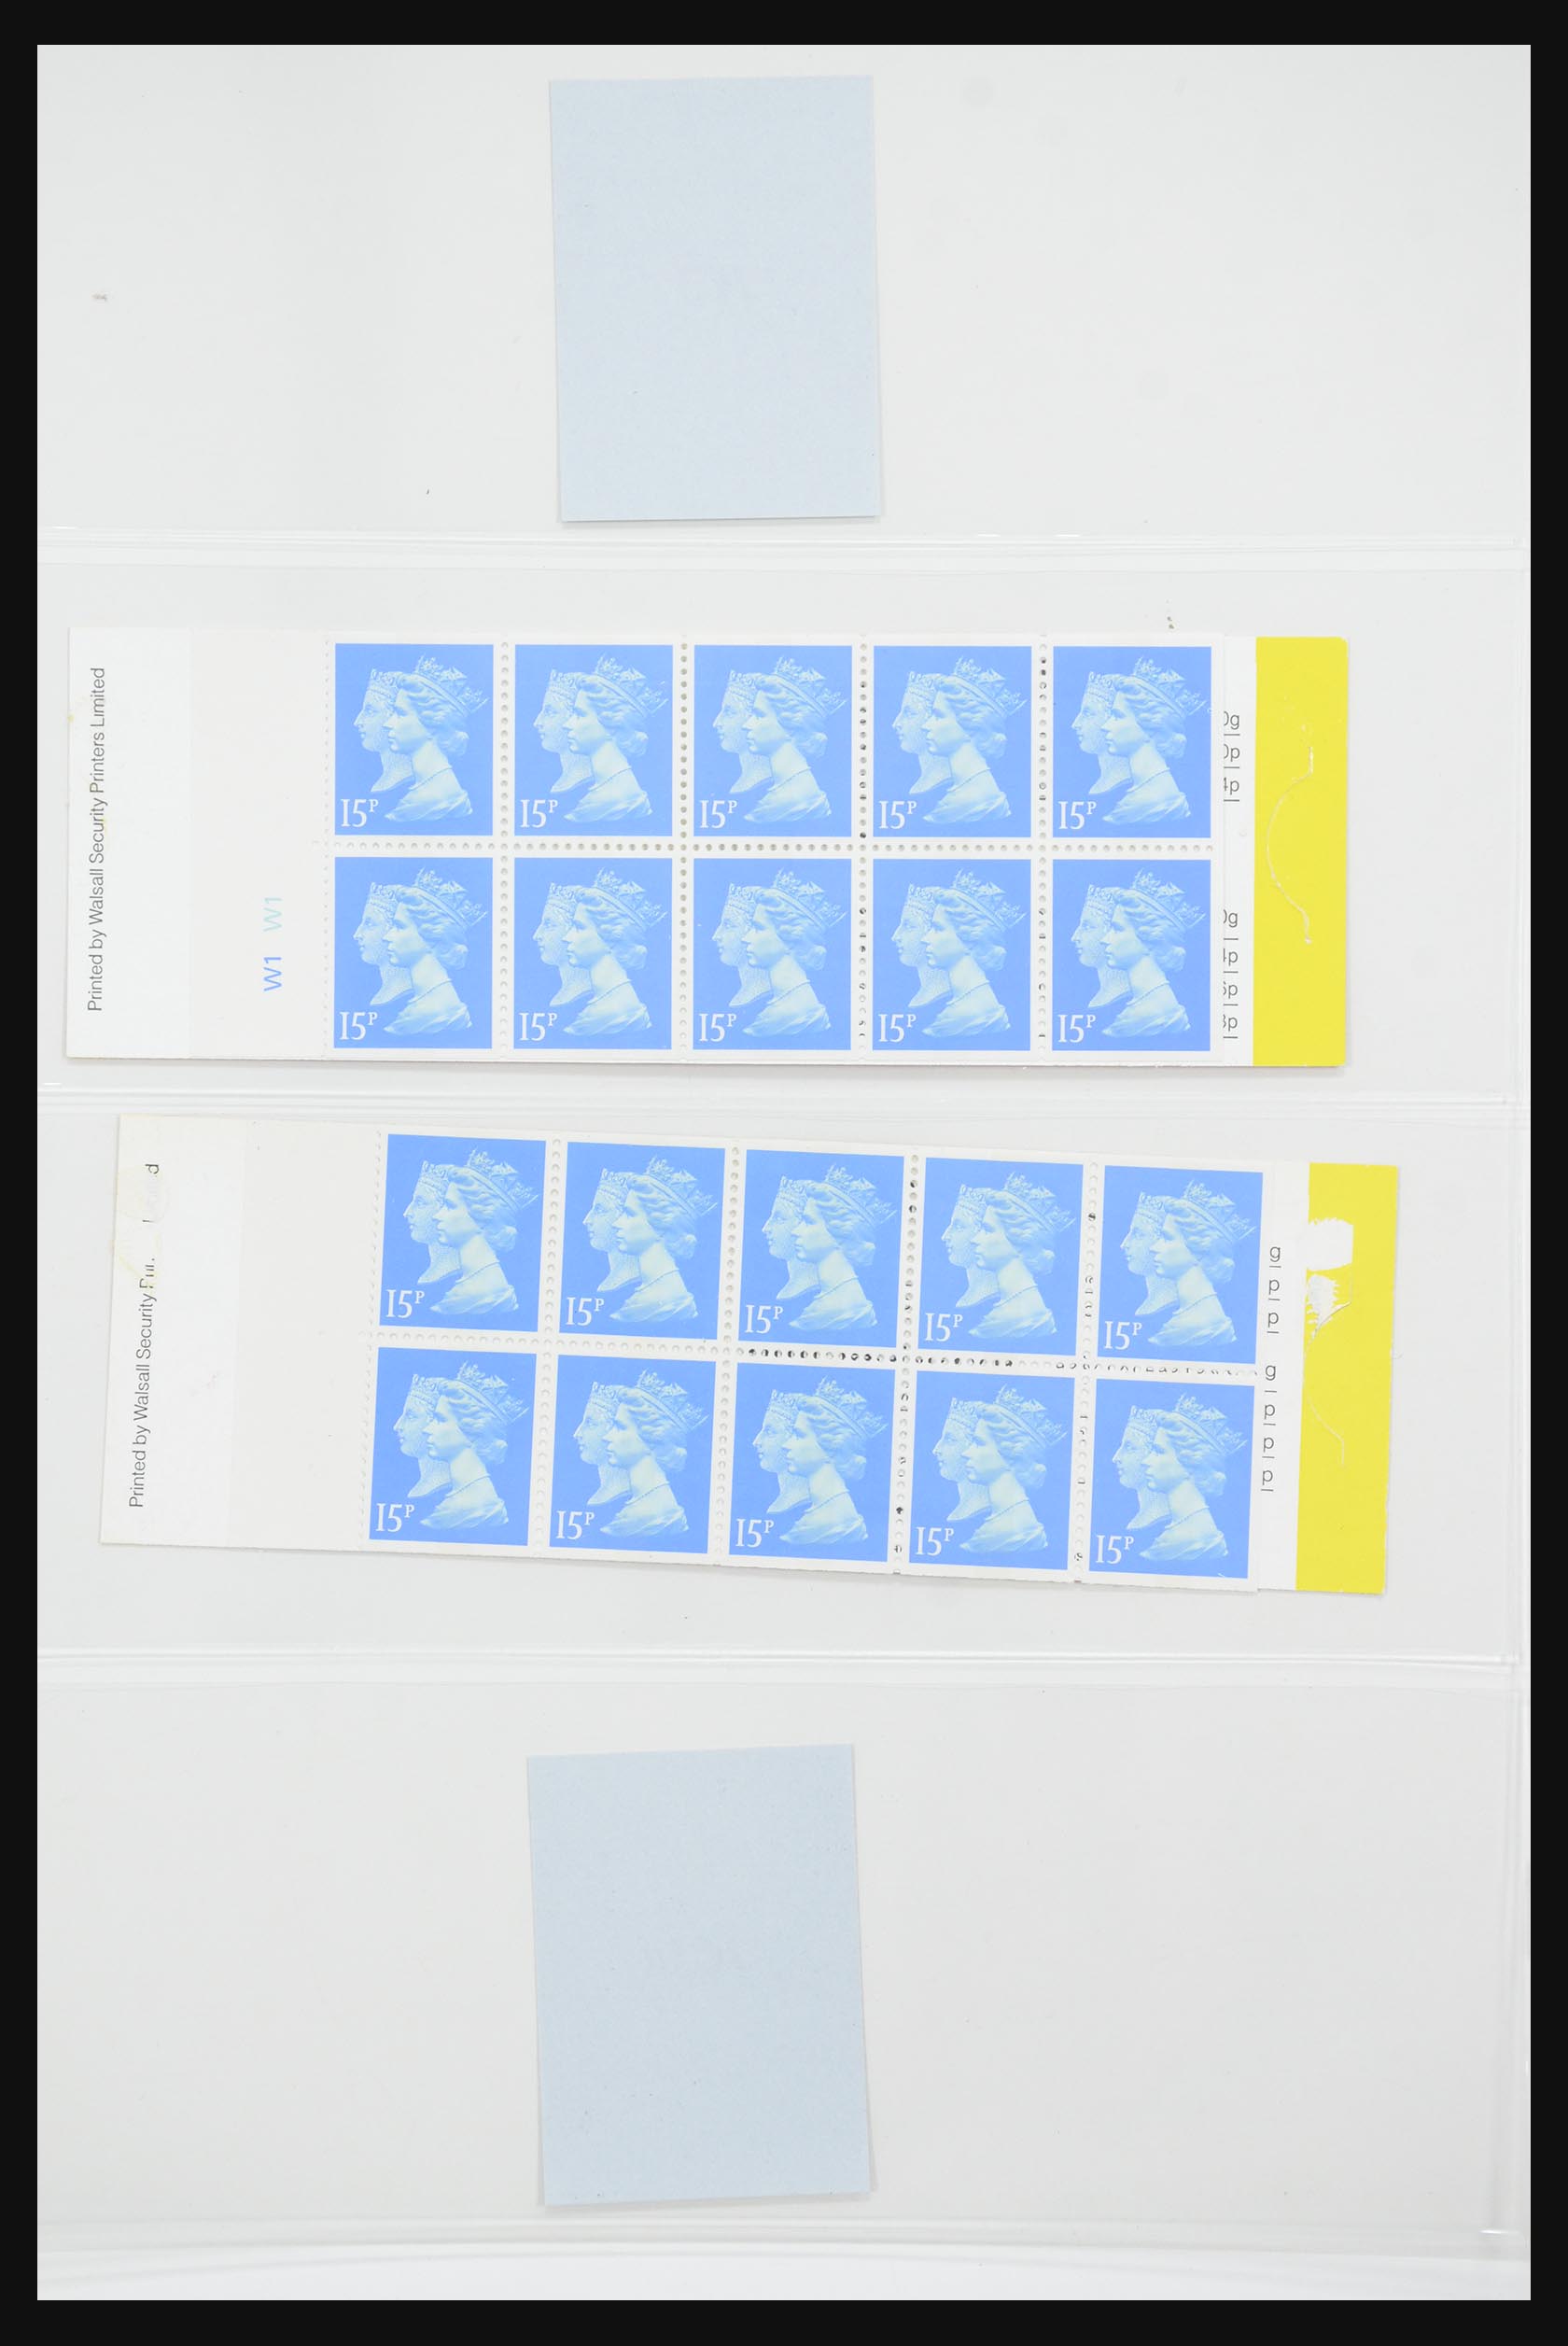 31960 186 - 31960 Engeland postzegelboekjes 1989-2000.